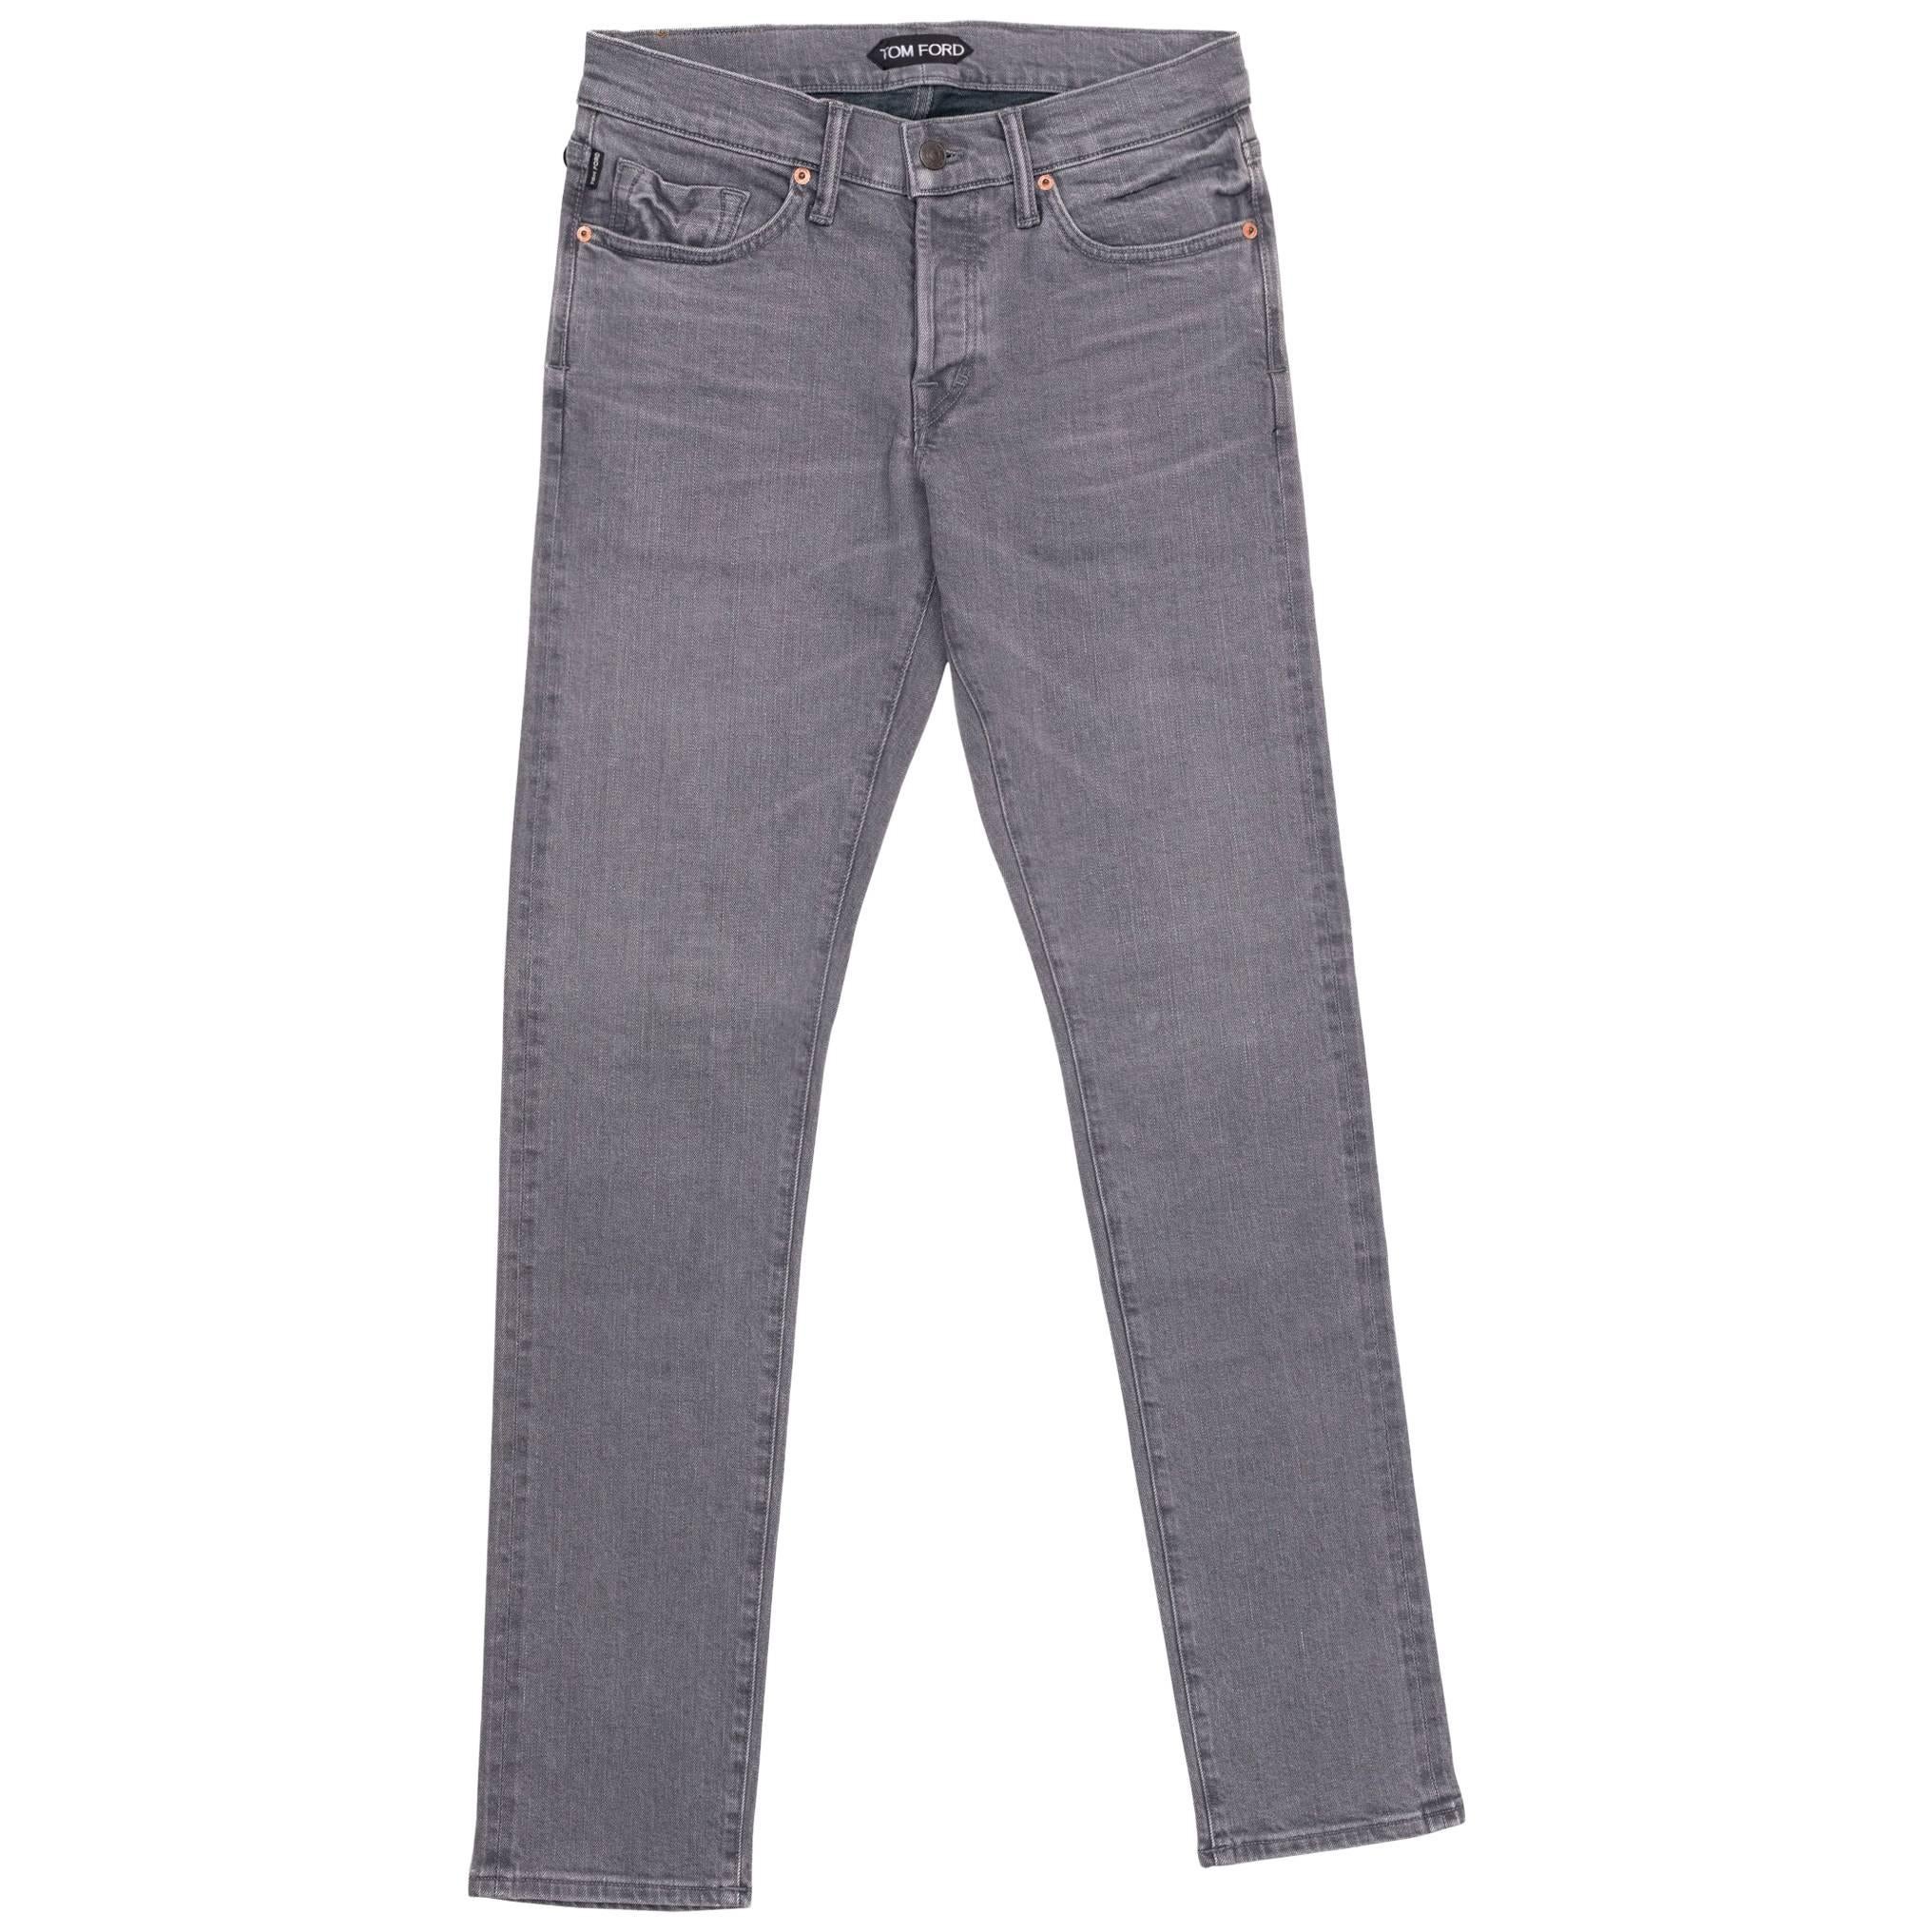 Tom Ford Selvedge Denim Jeans Light Grey Wash Size 36 Regular Fit Model   For Sale